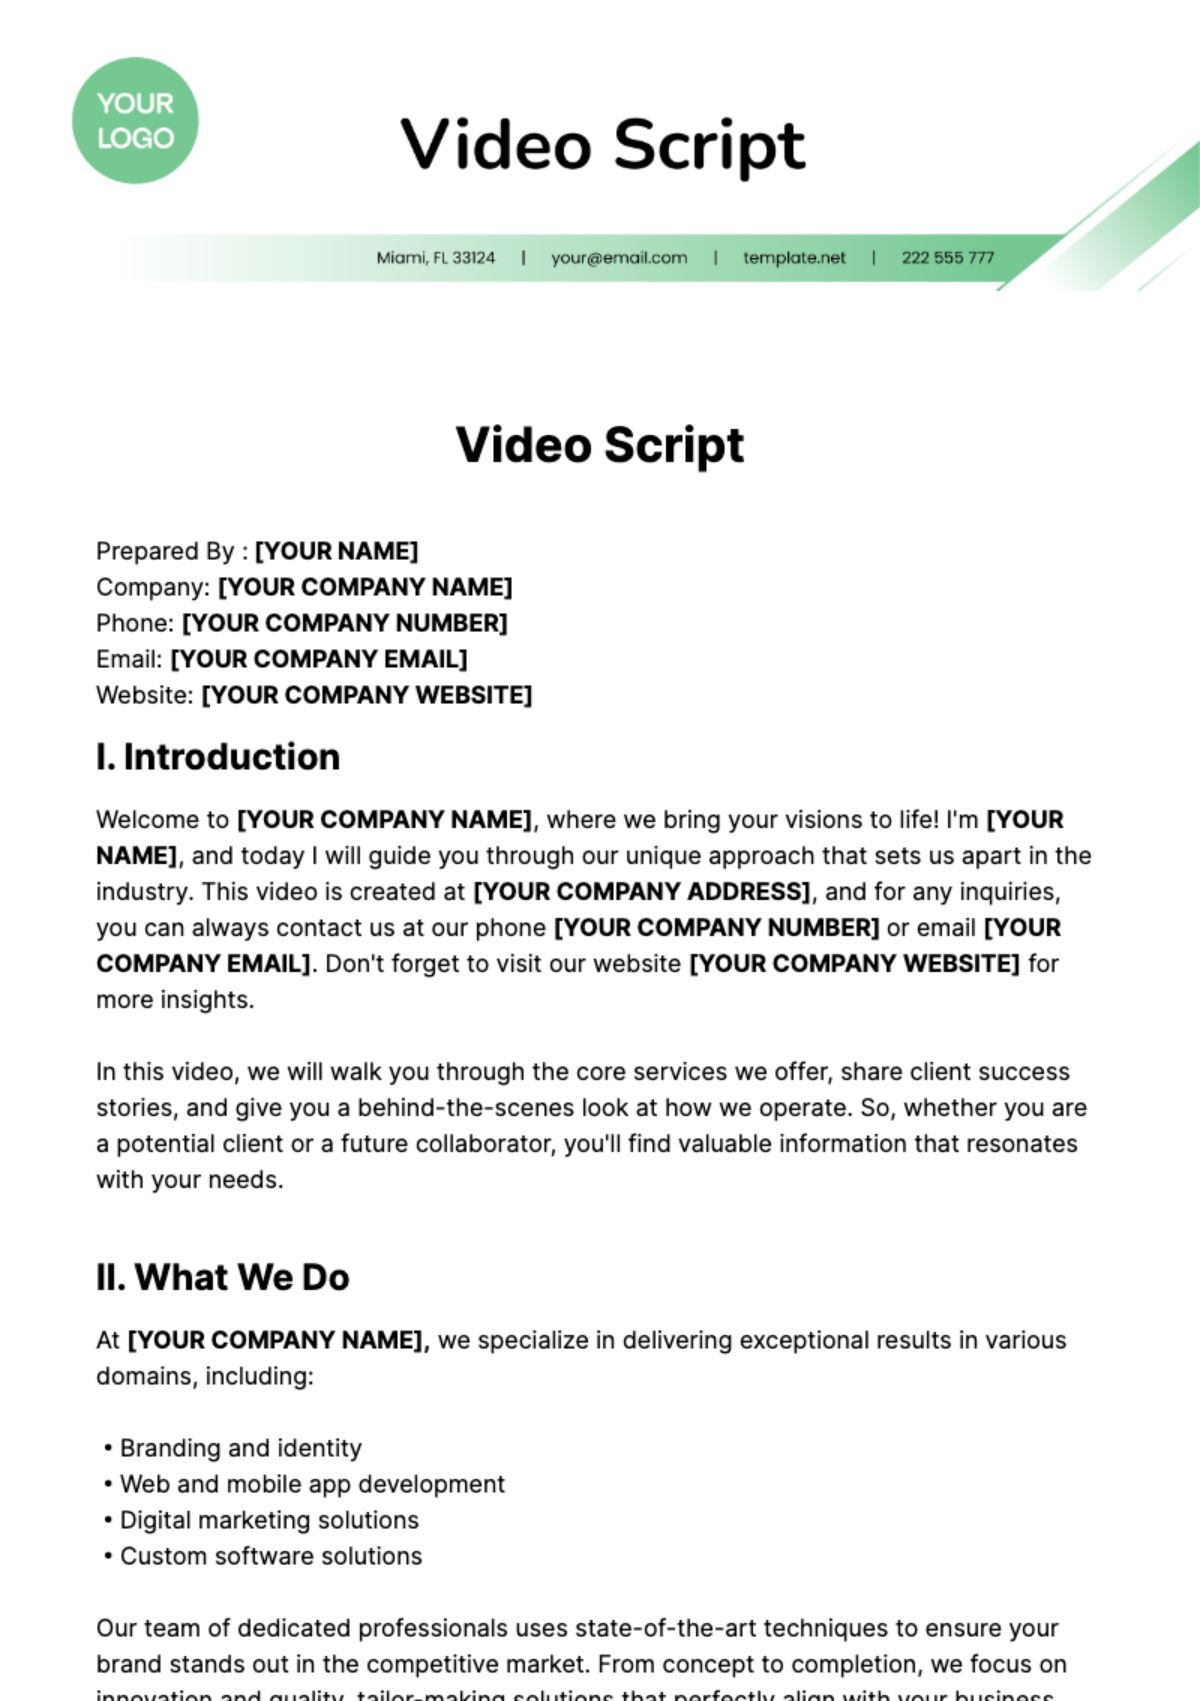 Video Script Template